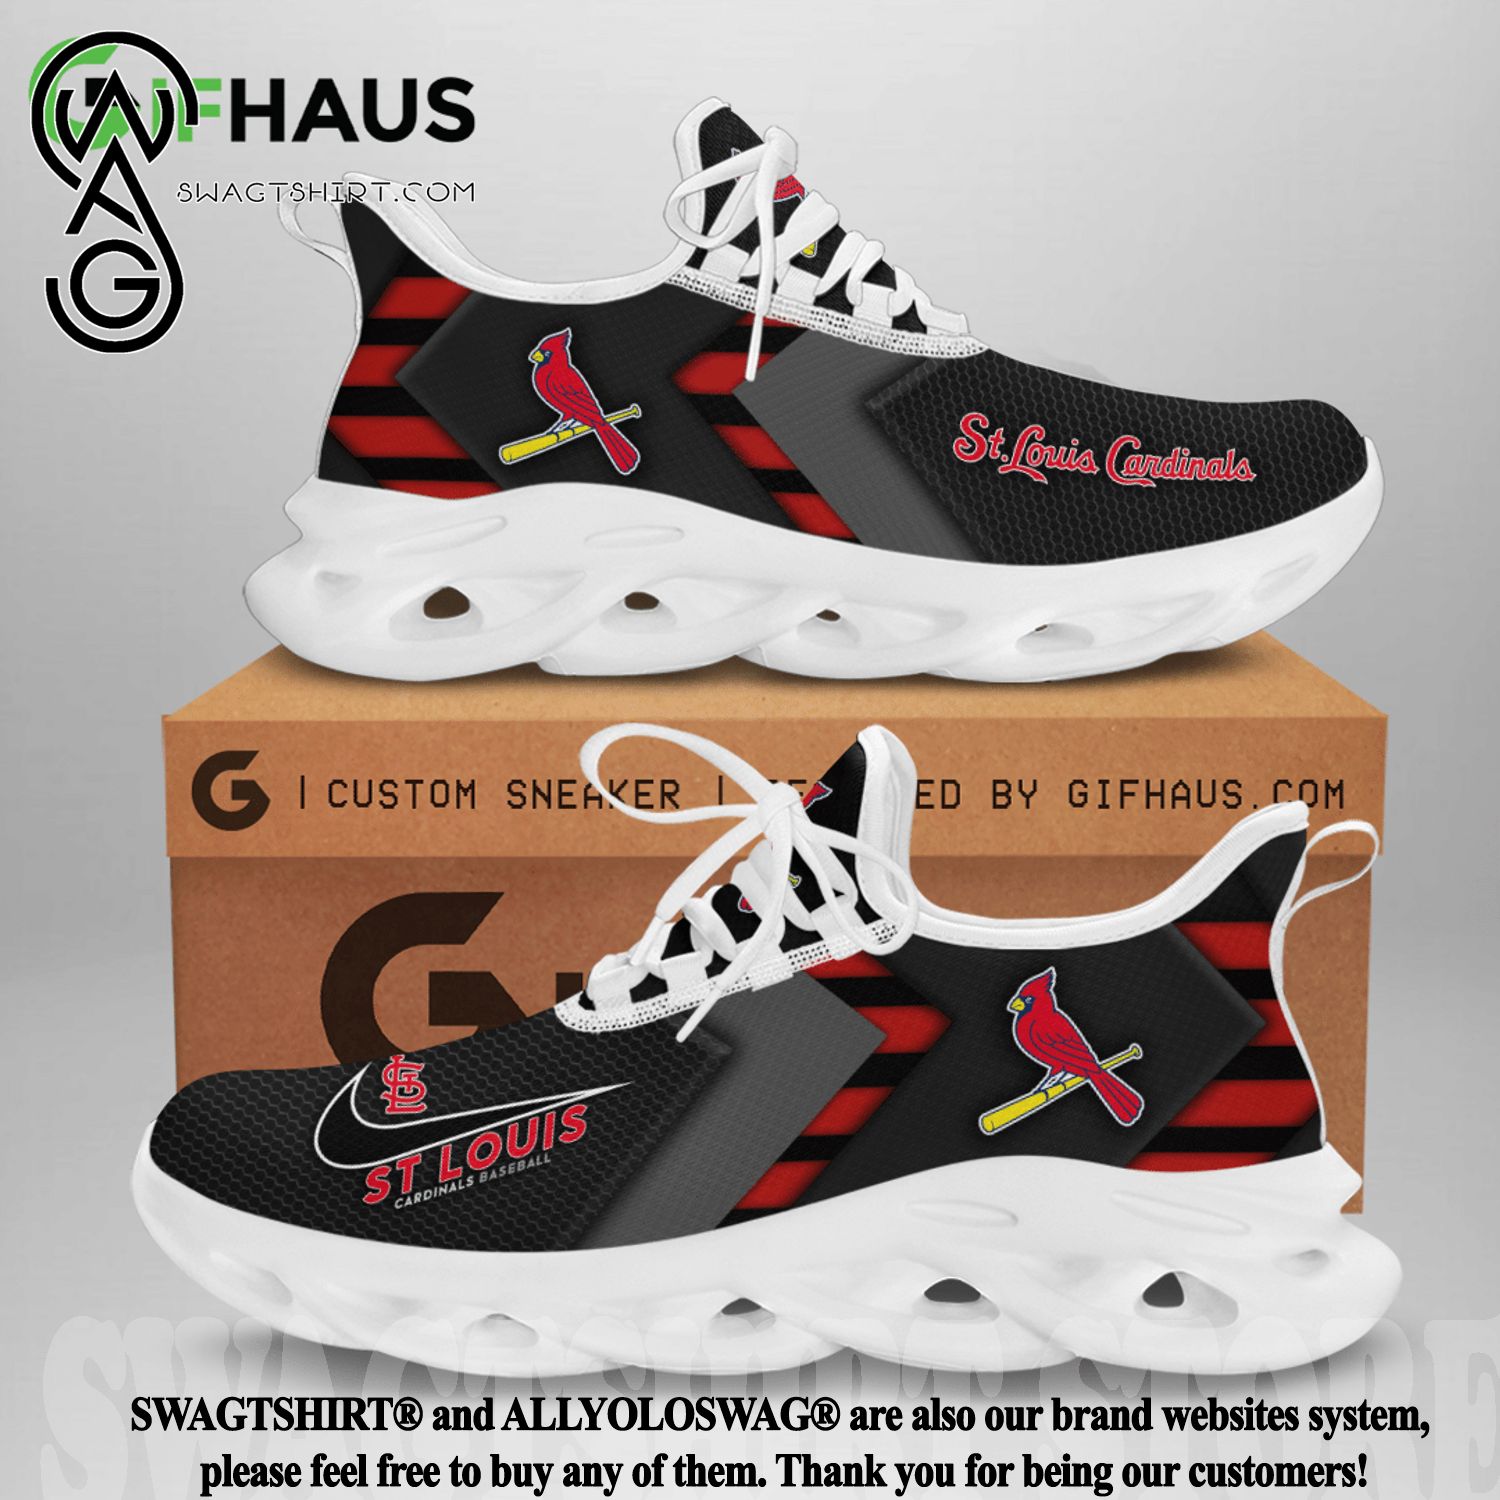 St louis cardinals max soul shoes l98 Max Soul Shoes - Inspire Uplift